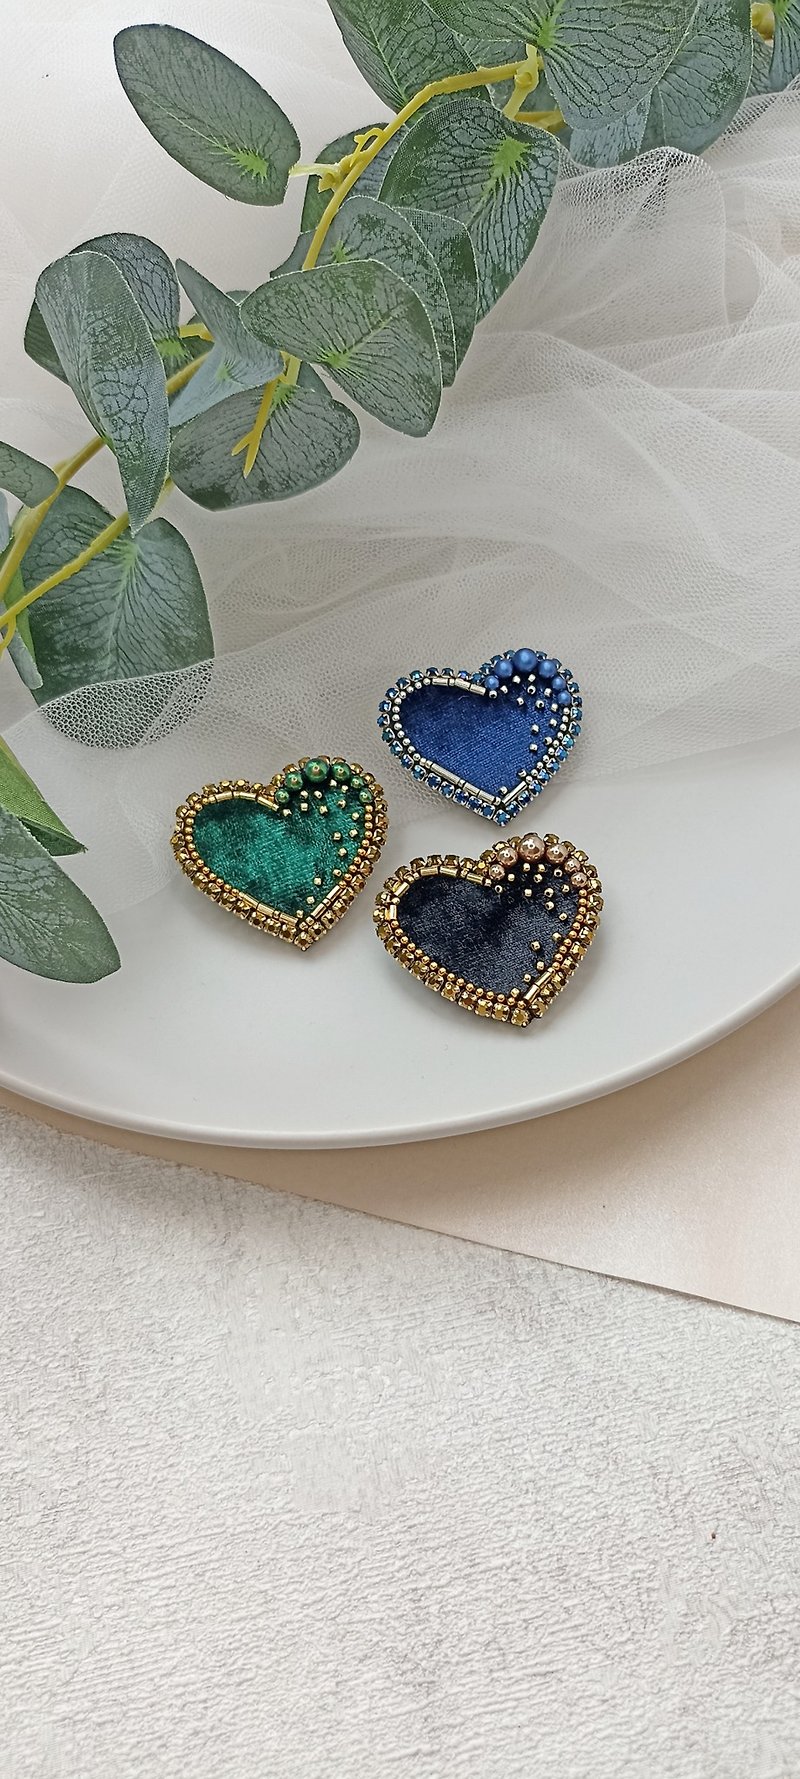 Handmade heart brooch, black heart pin, blue heart brooch, green heart brooch - 胸針/心口針 - 不鏽鋼 金色